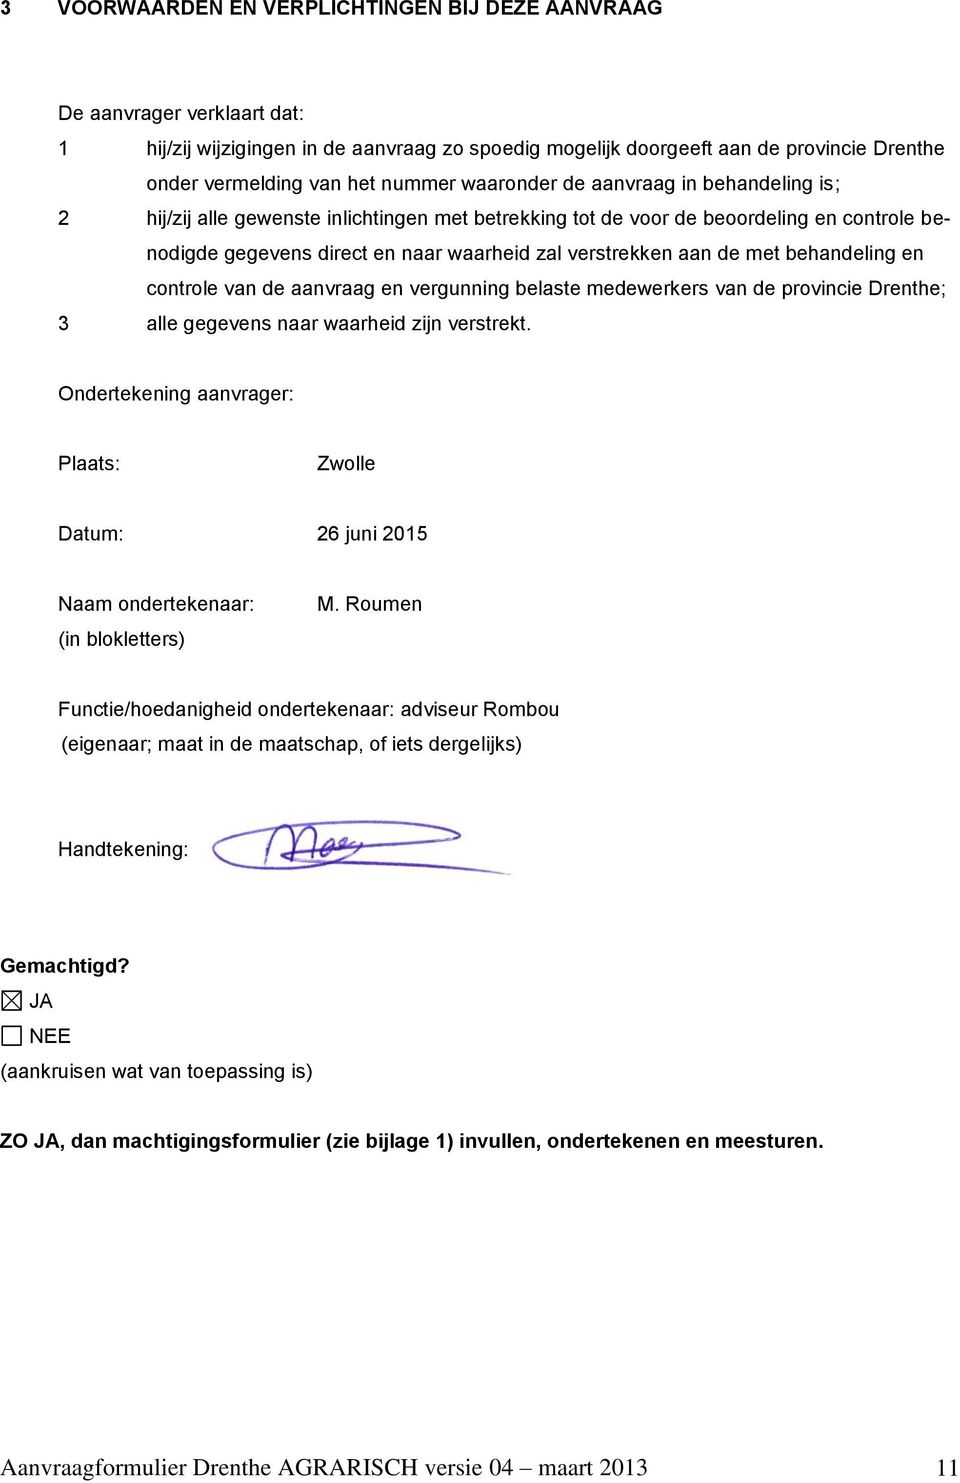 aan de met behandeling en controle van de aanvraag en vergunning belaste medewerkers van de provincie Drenthe; 3 alle gegevens naar waarheid zijn verstrekt.